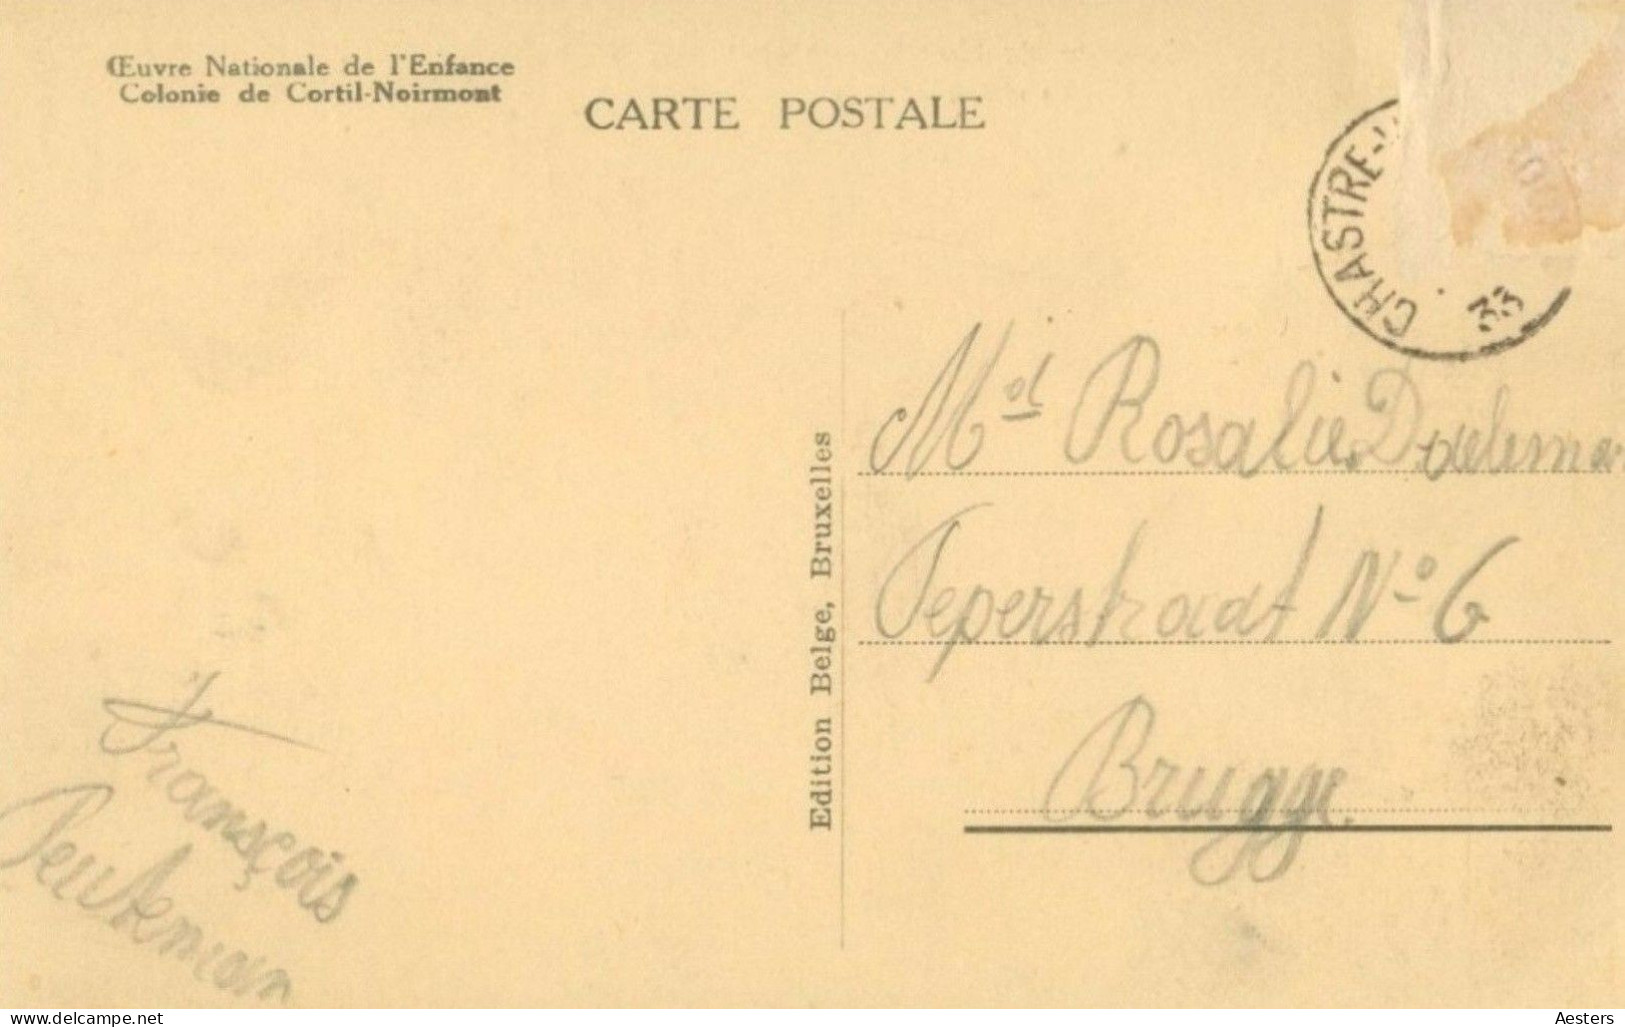 Waals-Brabant; Colonie de Cortil-Noirmont, 12 Cartes Postales différentes - 2 voyagé / 10 non voyagé. (24 scans)